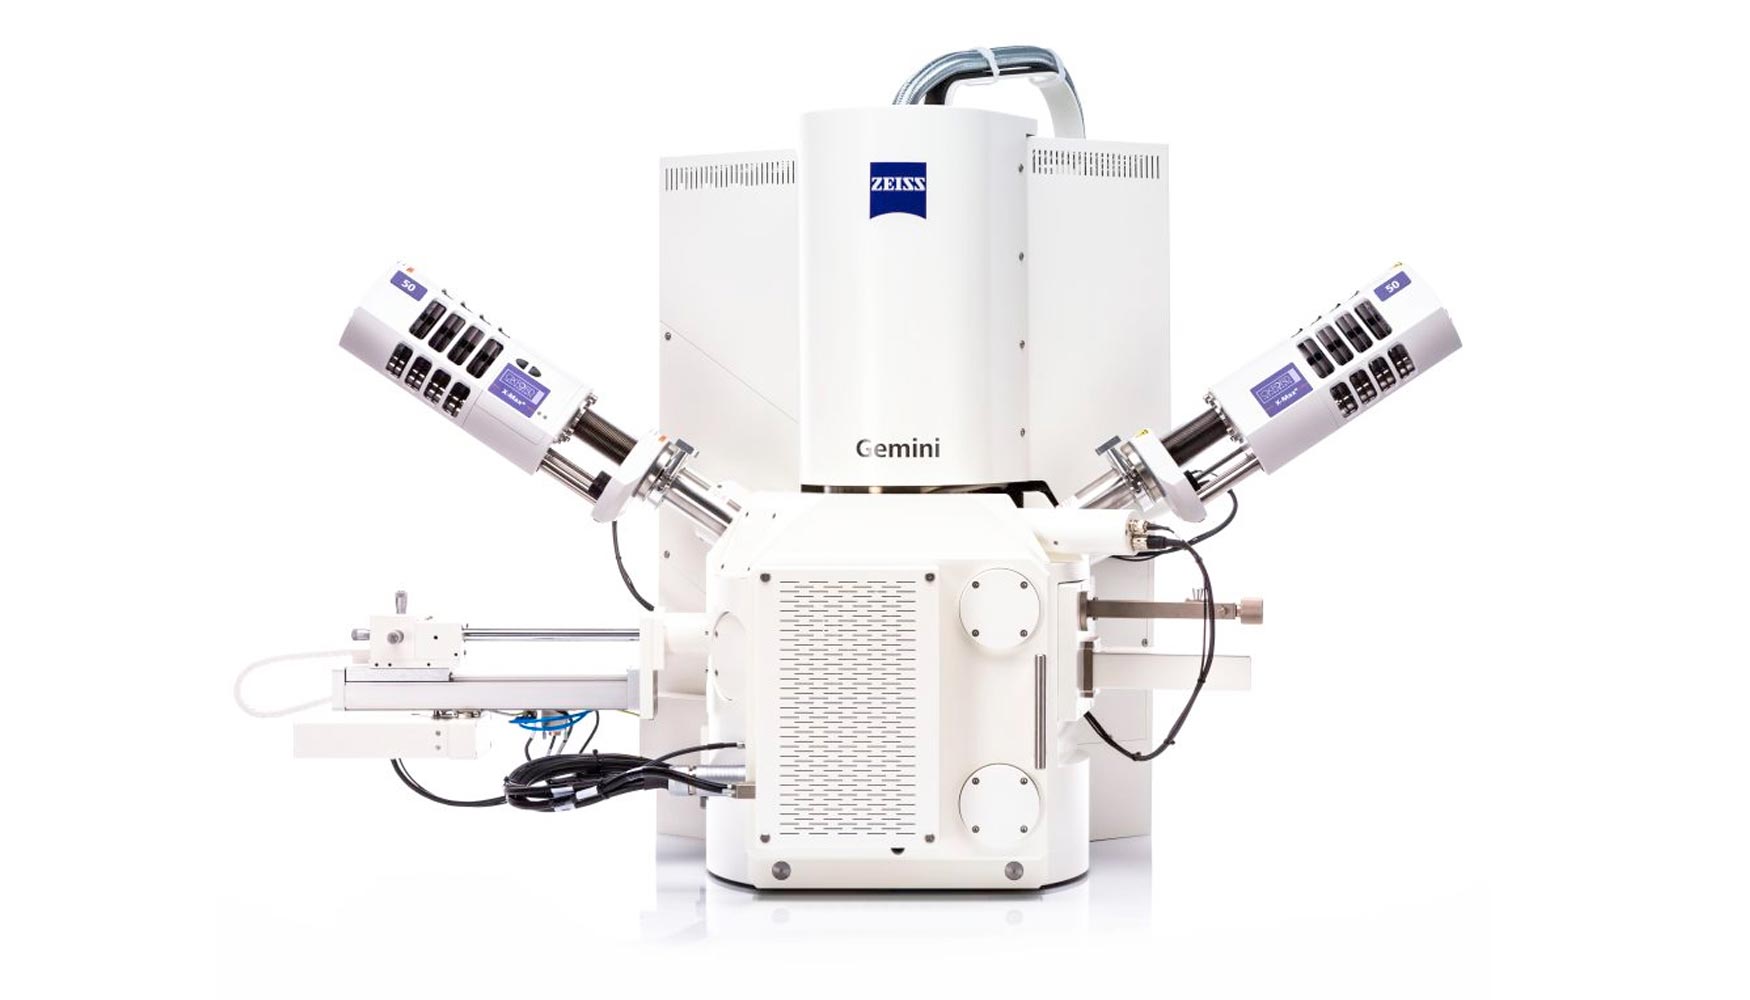 La familia Zeiss Sigma, idnea para imgenes de alta calidad y microscopa analtica avanzada